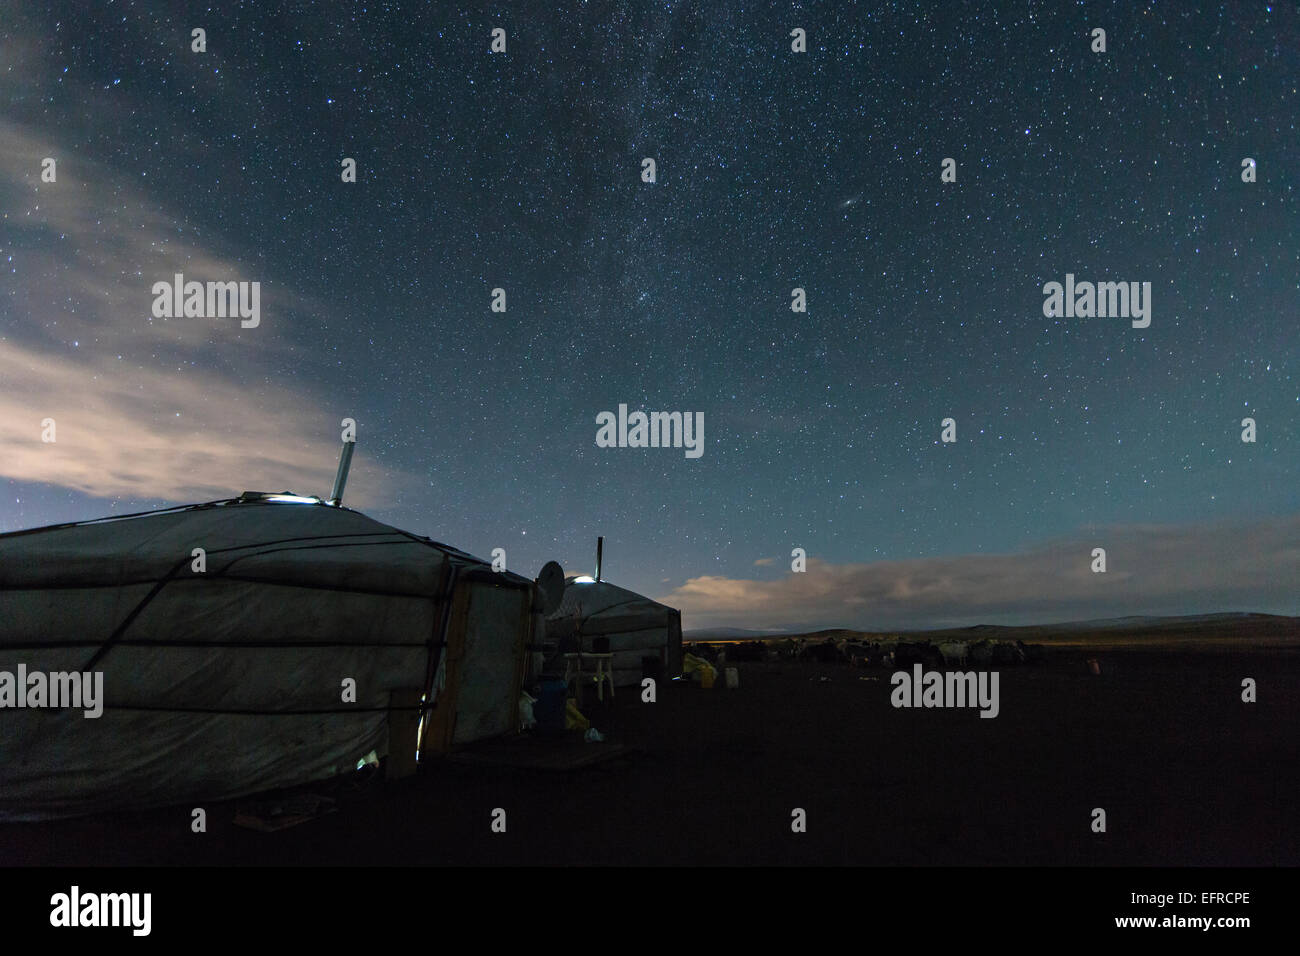 Yurt under Starry Sky, Mongolia Stock Photo